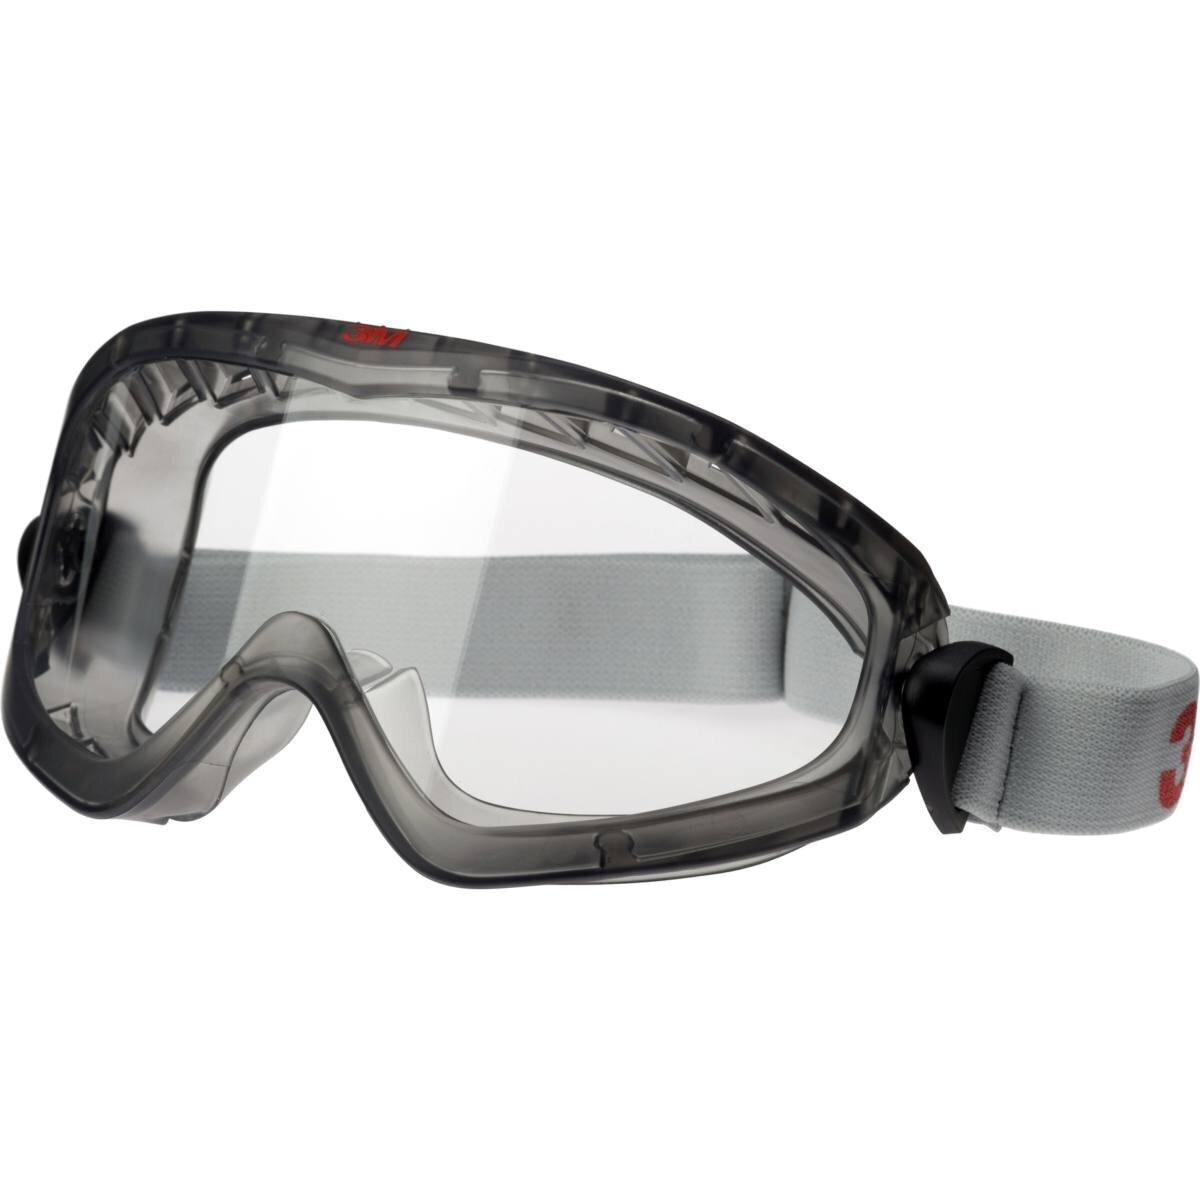 3M 2891-SGAF Vollsichtbrille, mit Belüftungsschlitz, verstellbare Gelenke, Anti-Fog Beschichtung